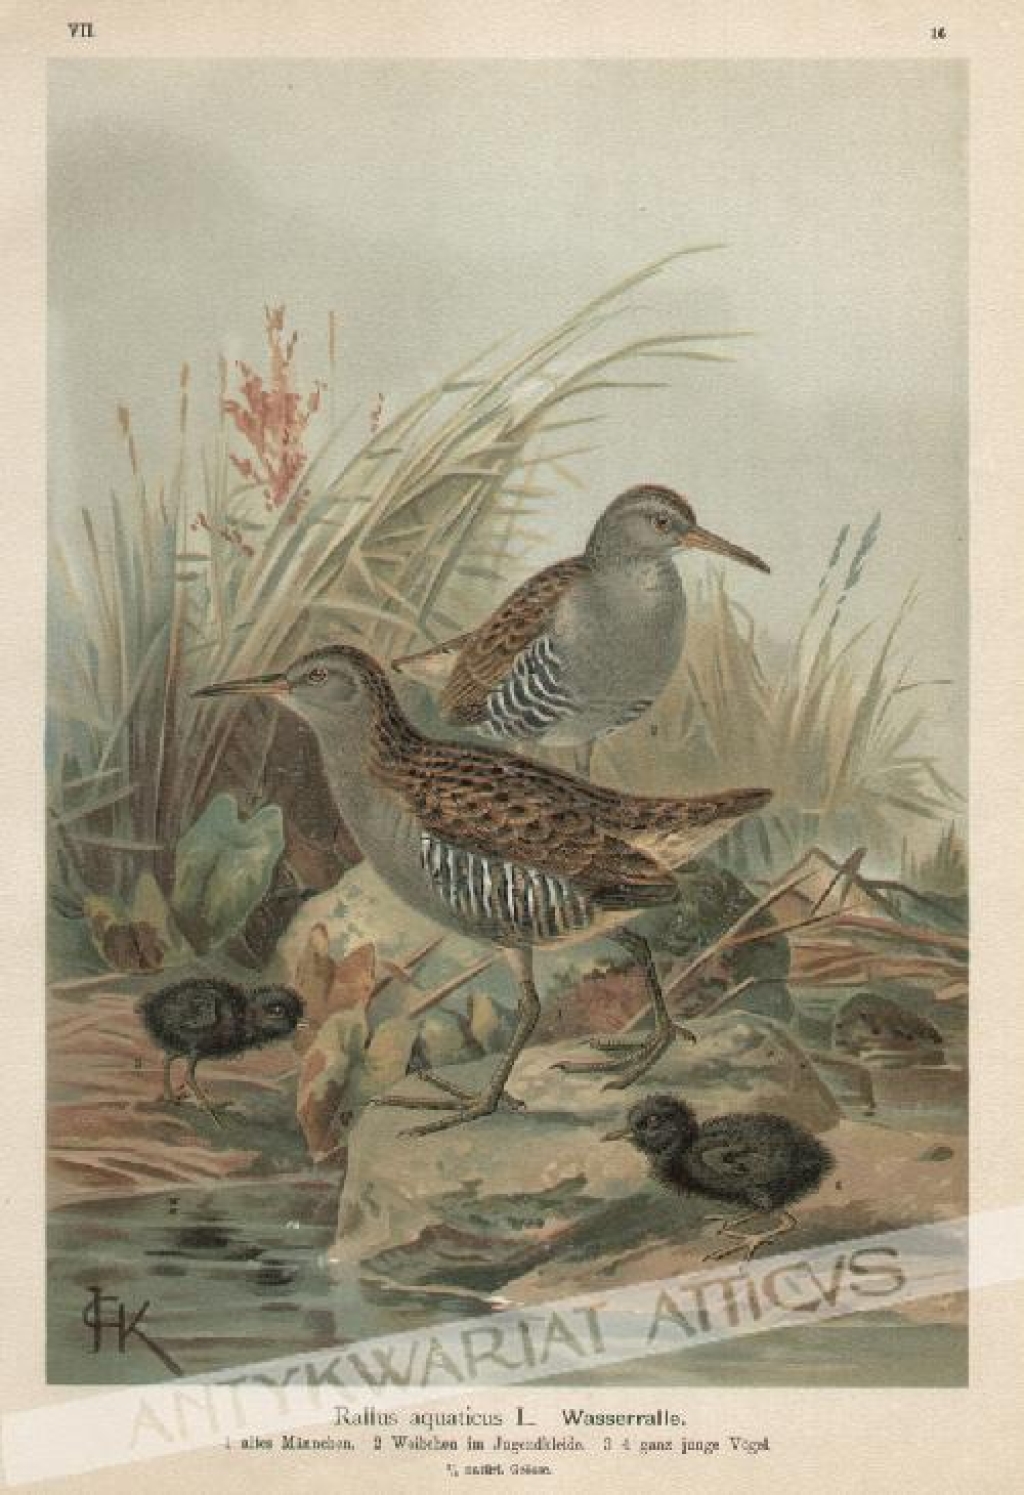 [rycina, 1900] [Wodnik zwyczajny] Rallus aquatius L. Wasserralle